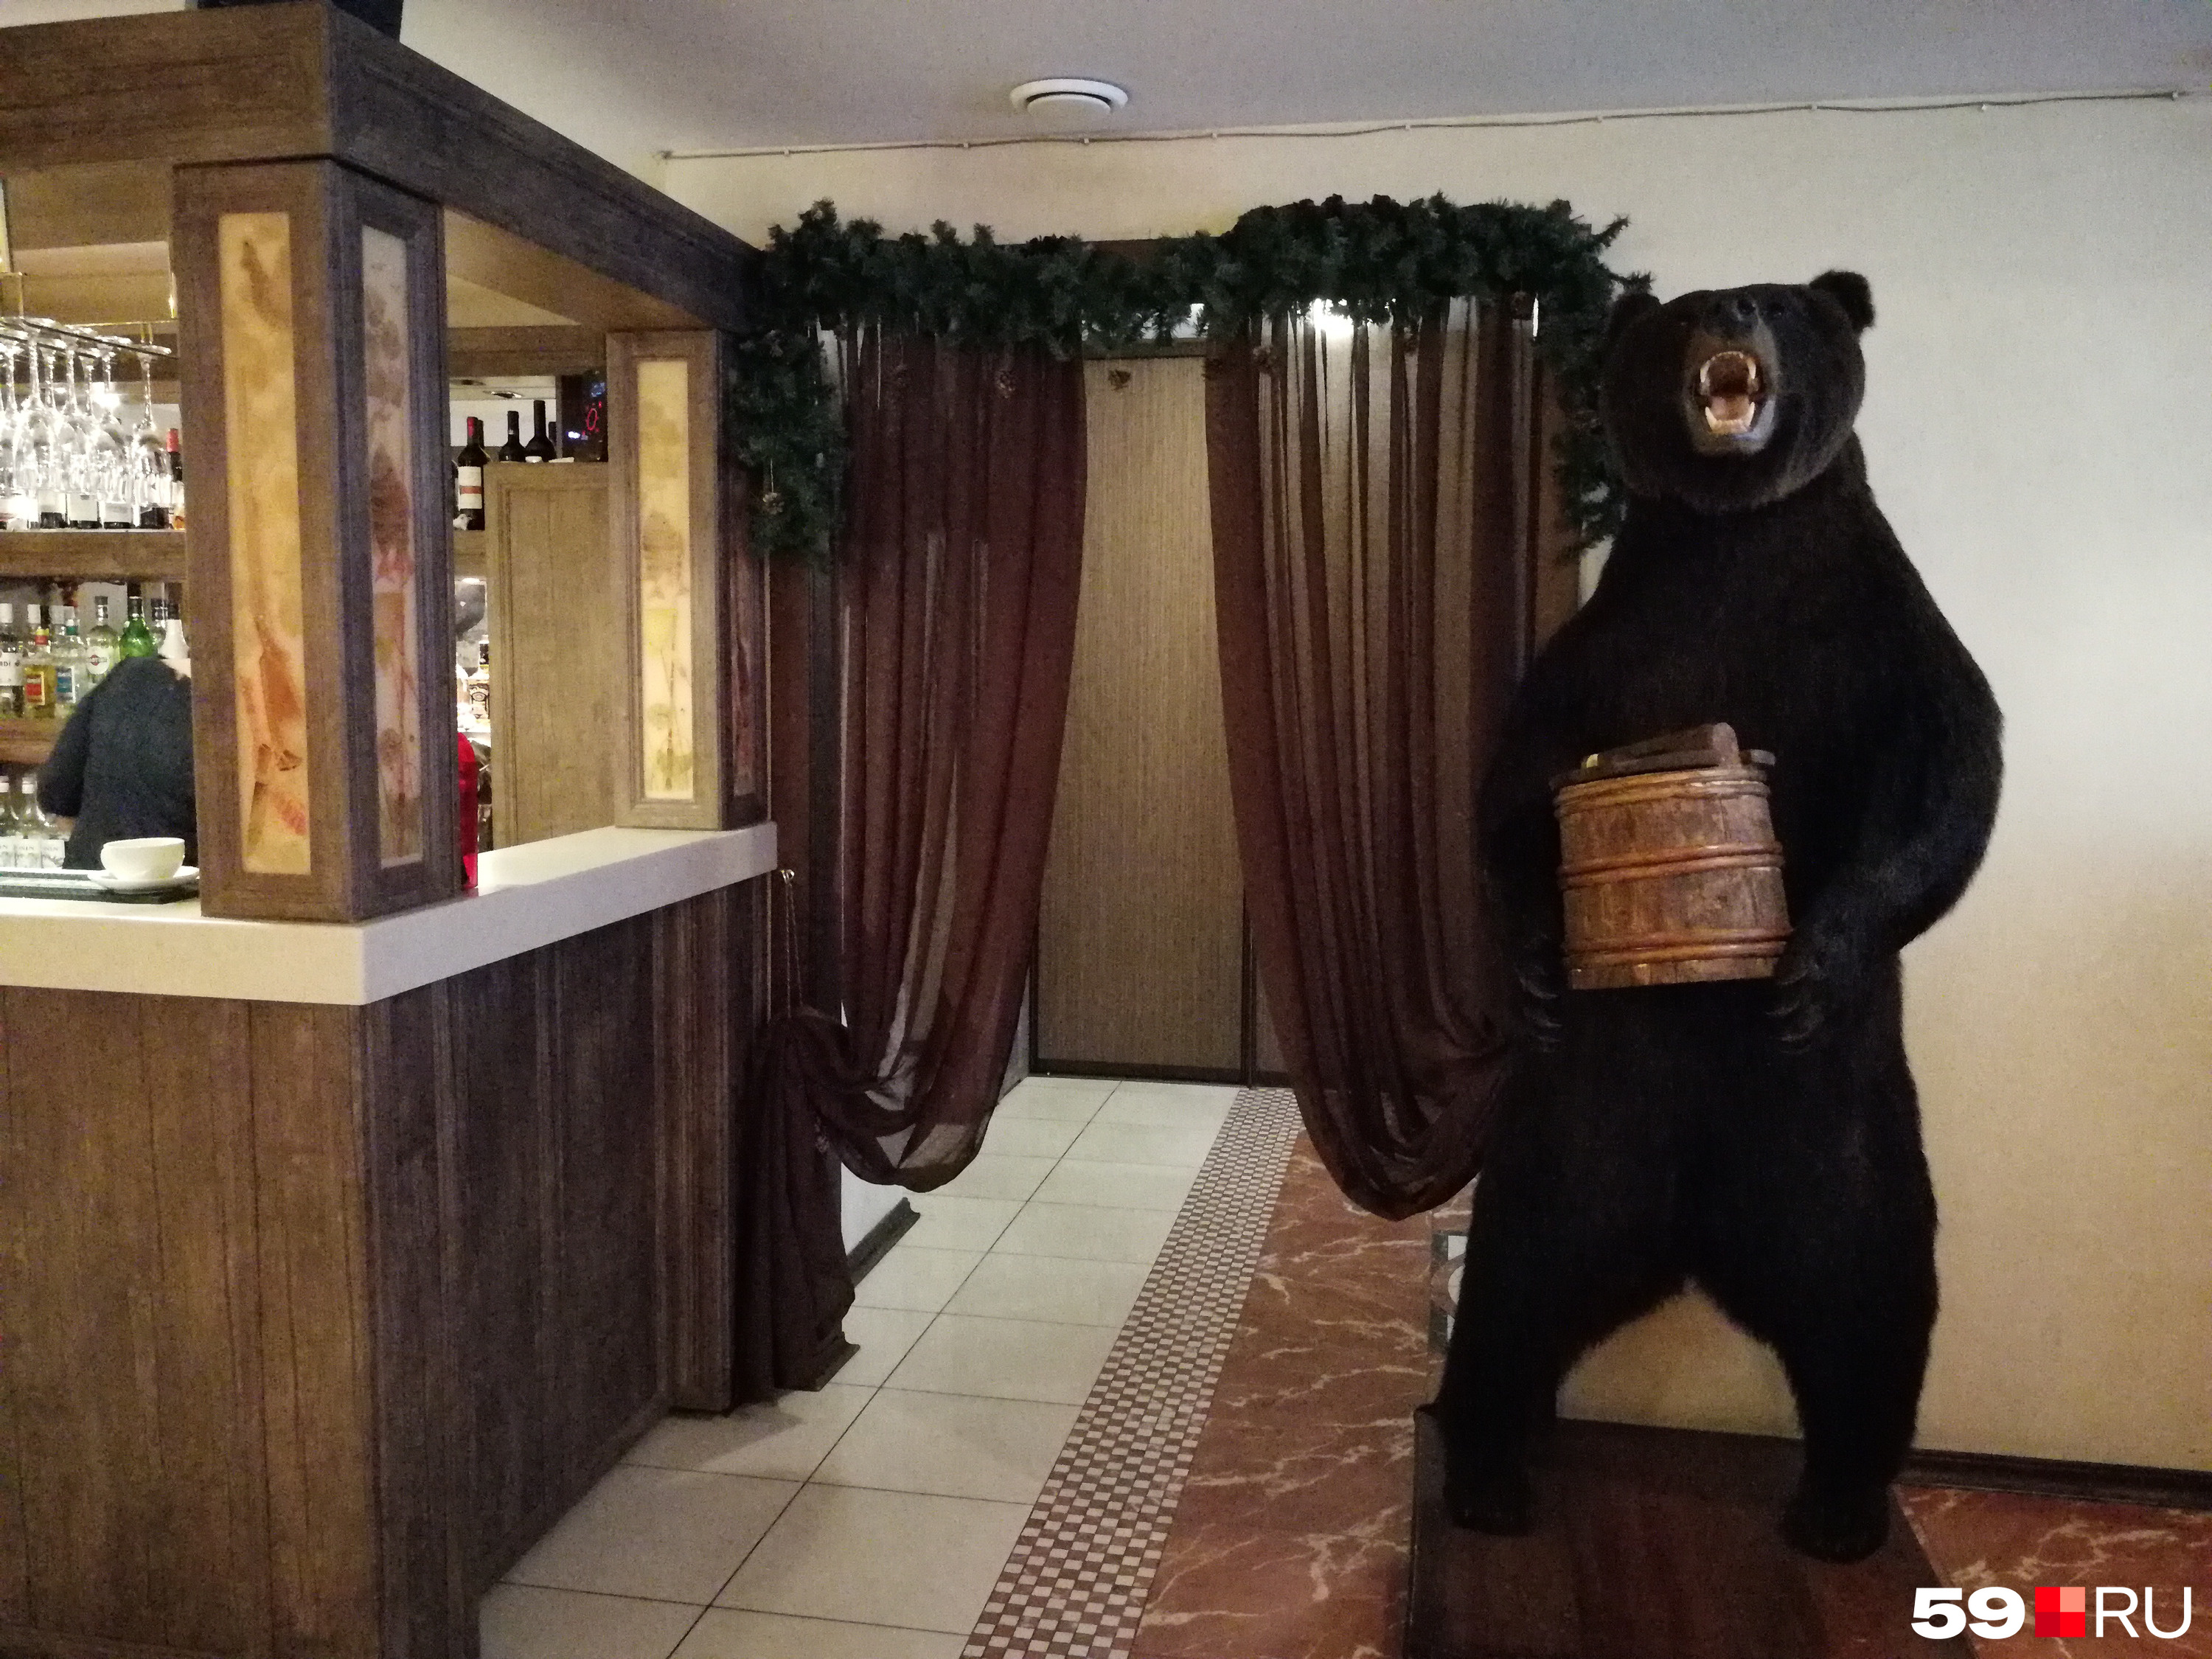 У входа в зал разместили чучело медведя